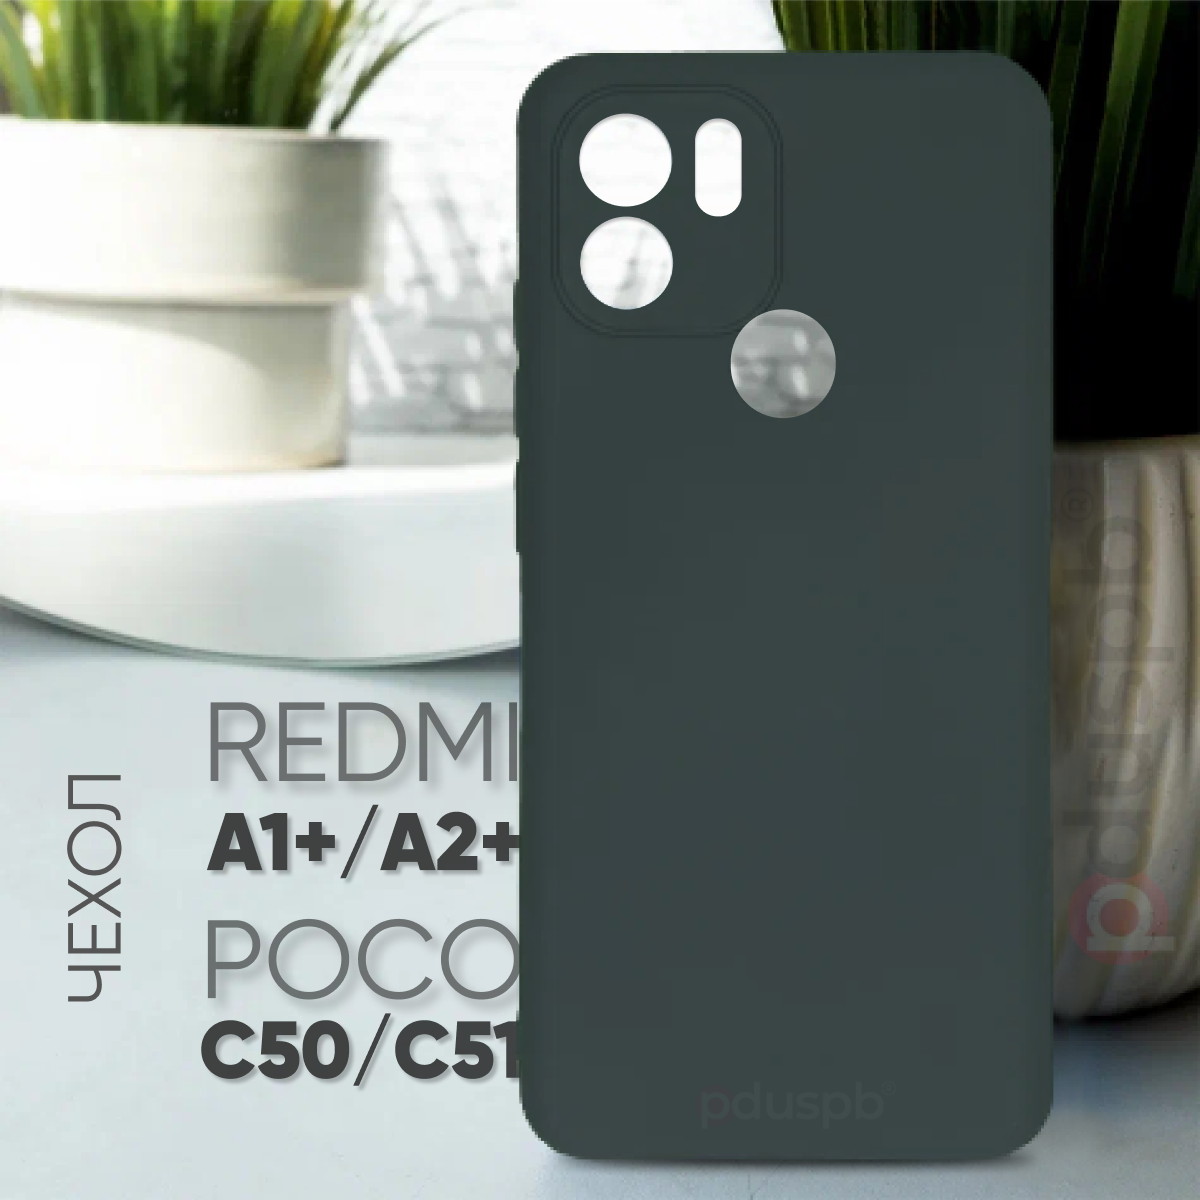 Противоударный защитный матовый чехол клип-кейс №23 Silicone Case для Xiaomi Redmi A1+ / A2+ / Poco C50 / C51 / Ксиаоми (Сяоми) Редми / Поко